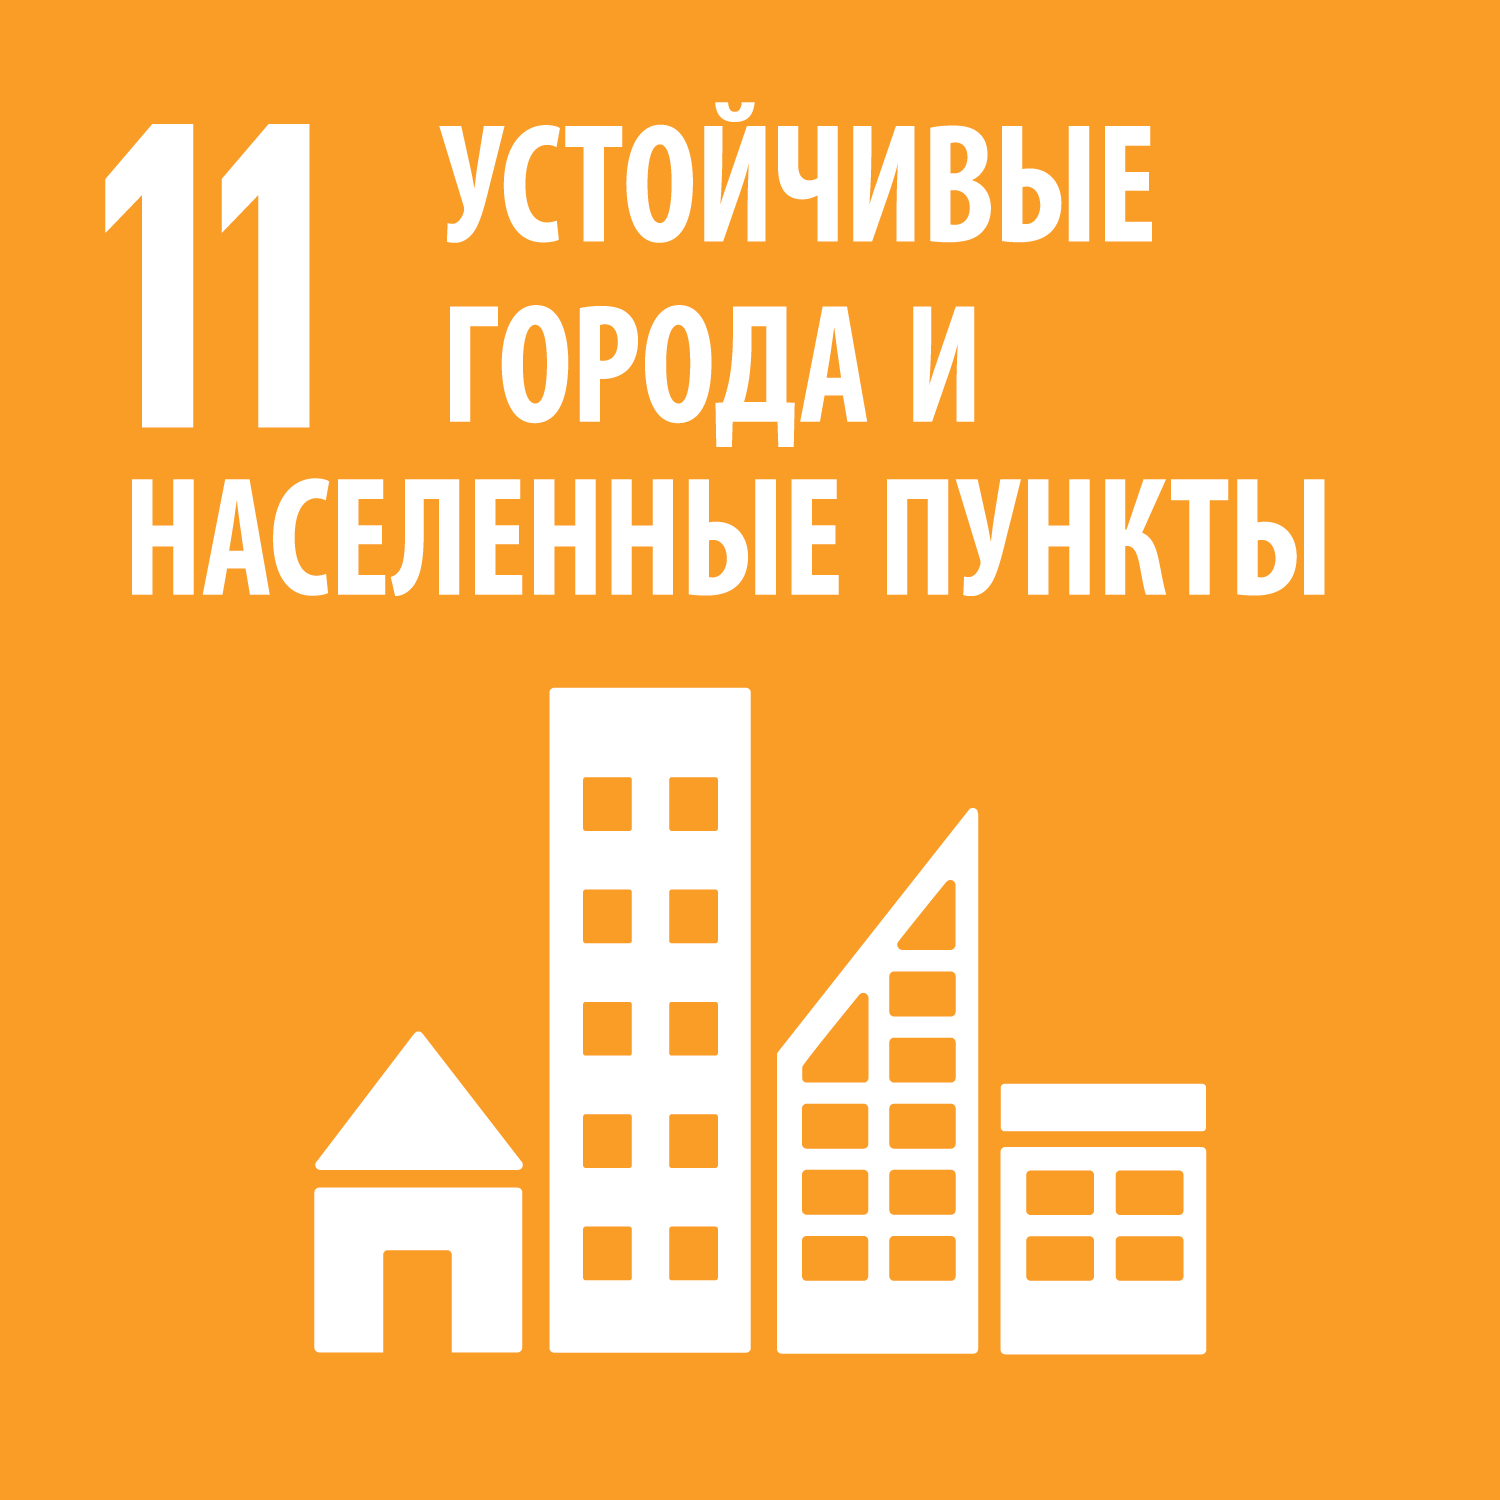 Цель 11 - Обеспечение открытости, безопасности, жизнестойкости и экологической устойчивости городов и населенных пунктов